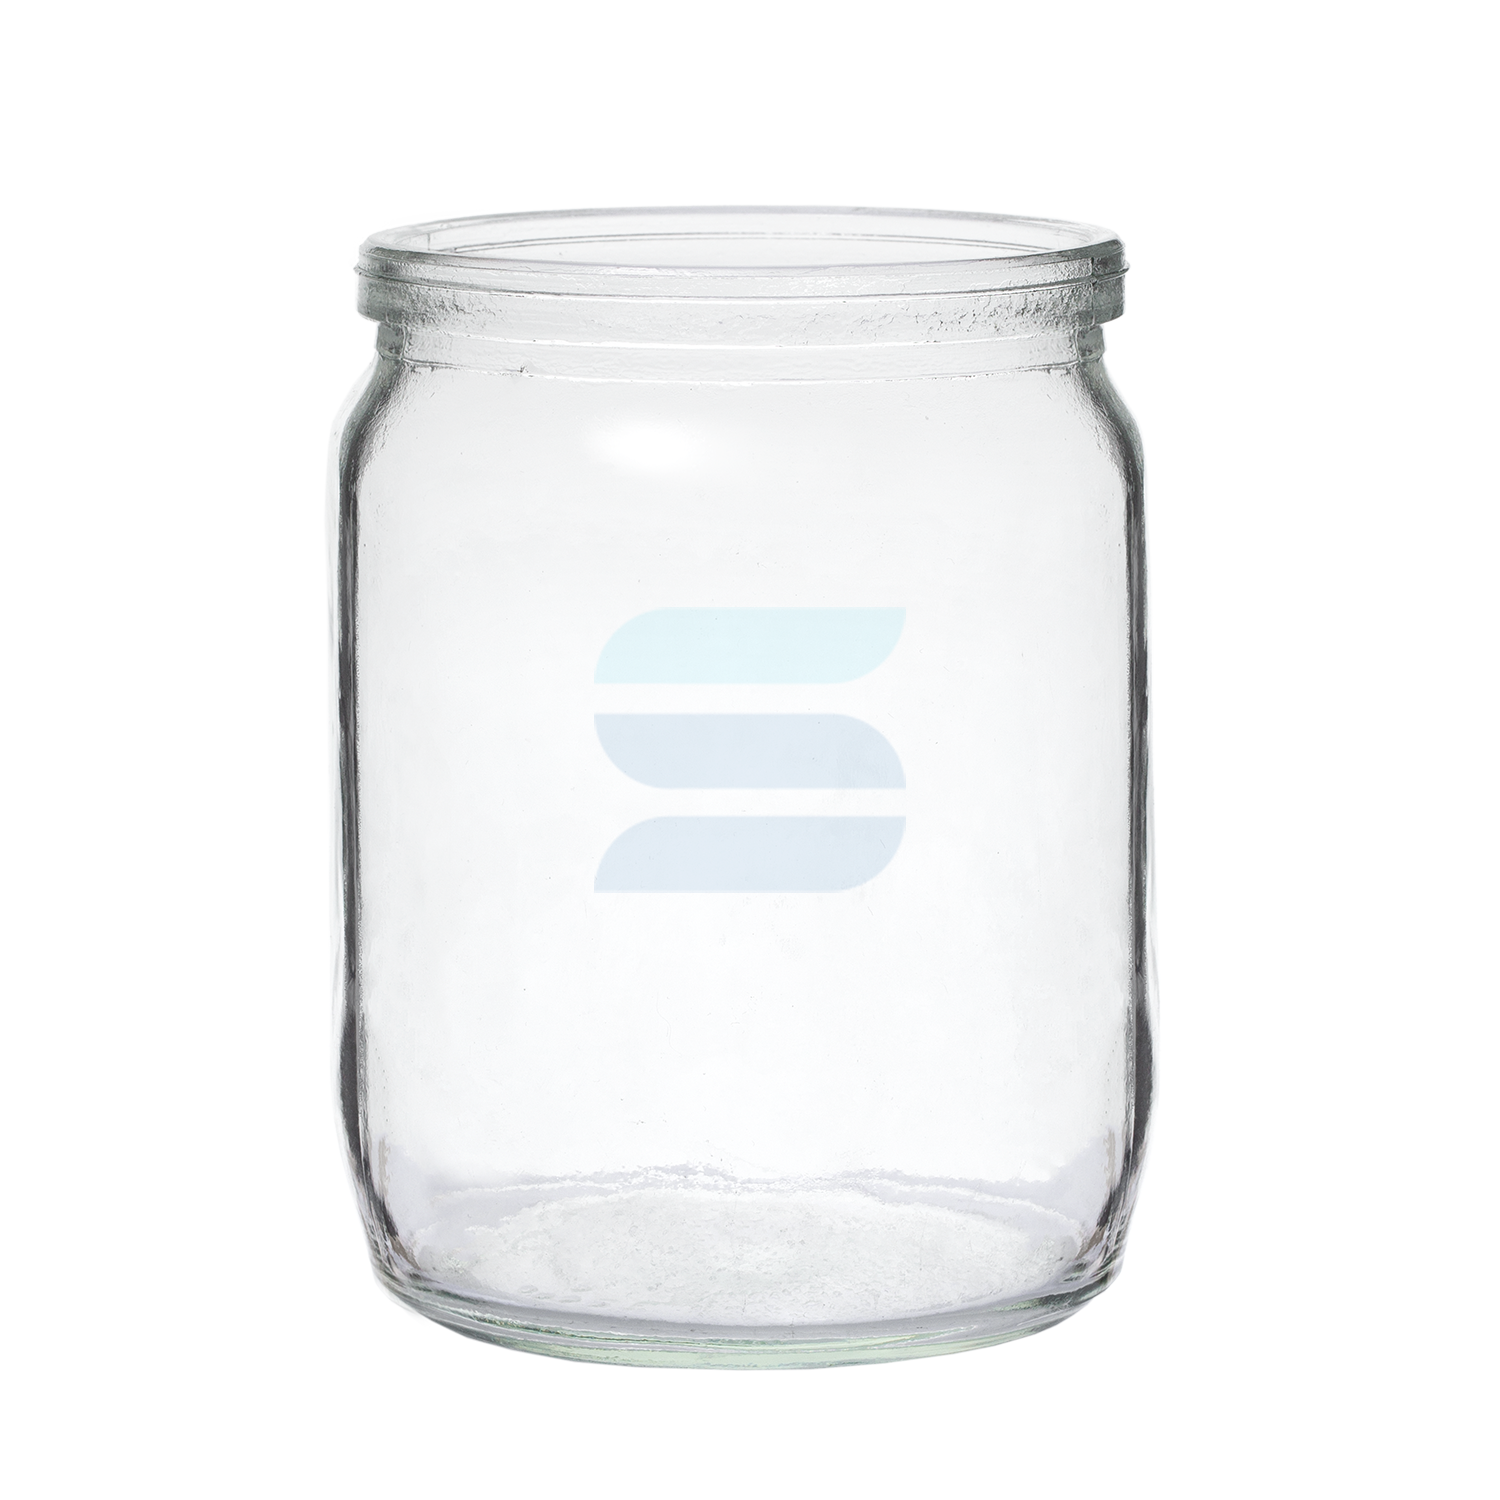  стеклянная 0,5 литра СКО  оптом  | Стеклобанки .